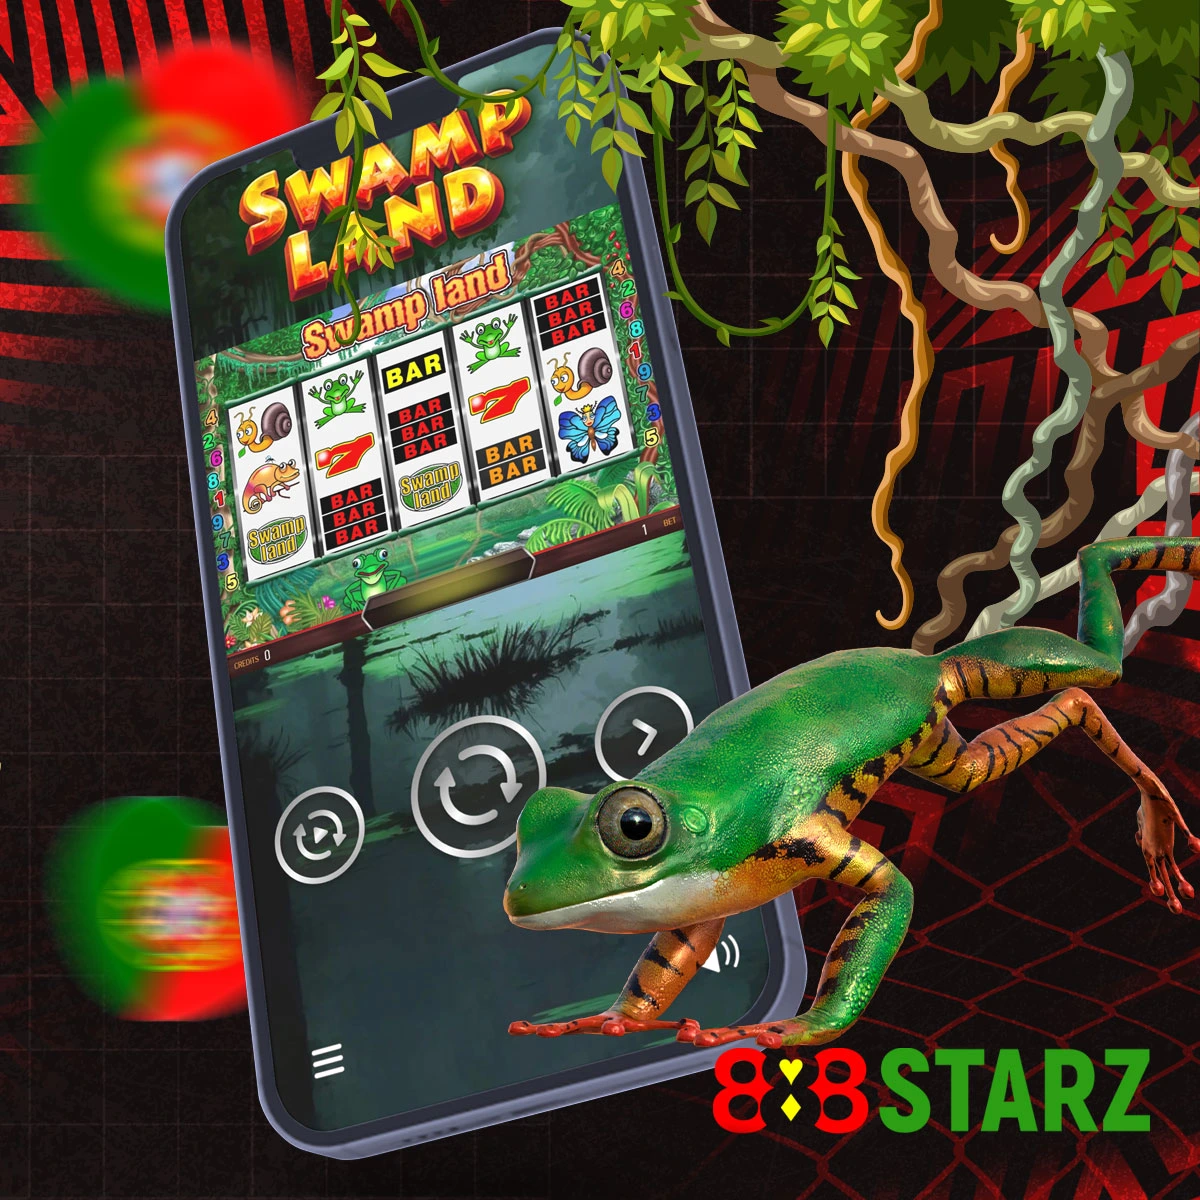 Características do jogo 888Starz Swamp Land